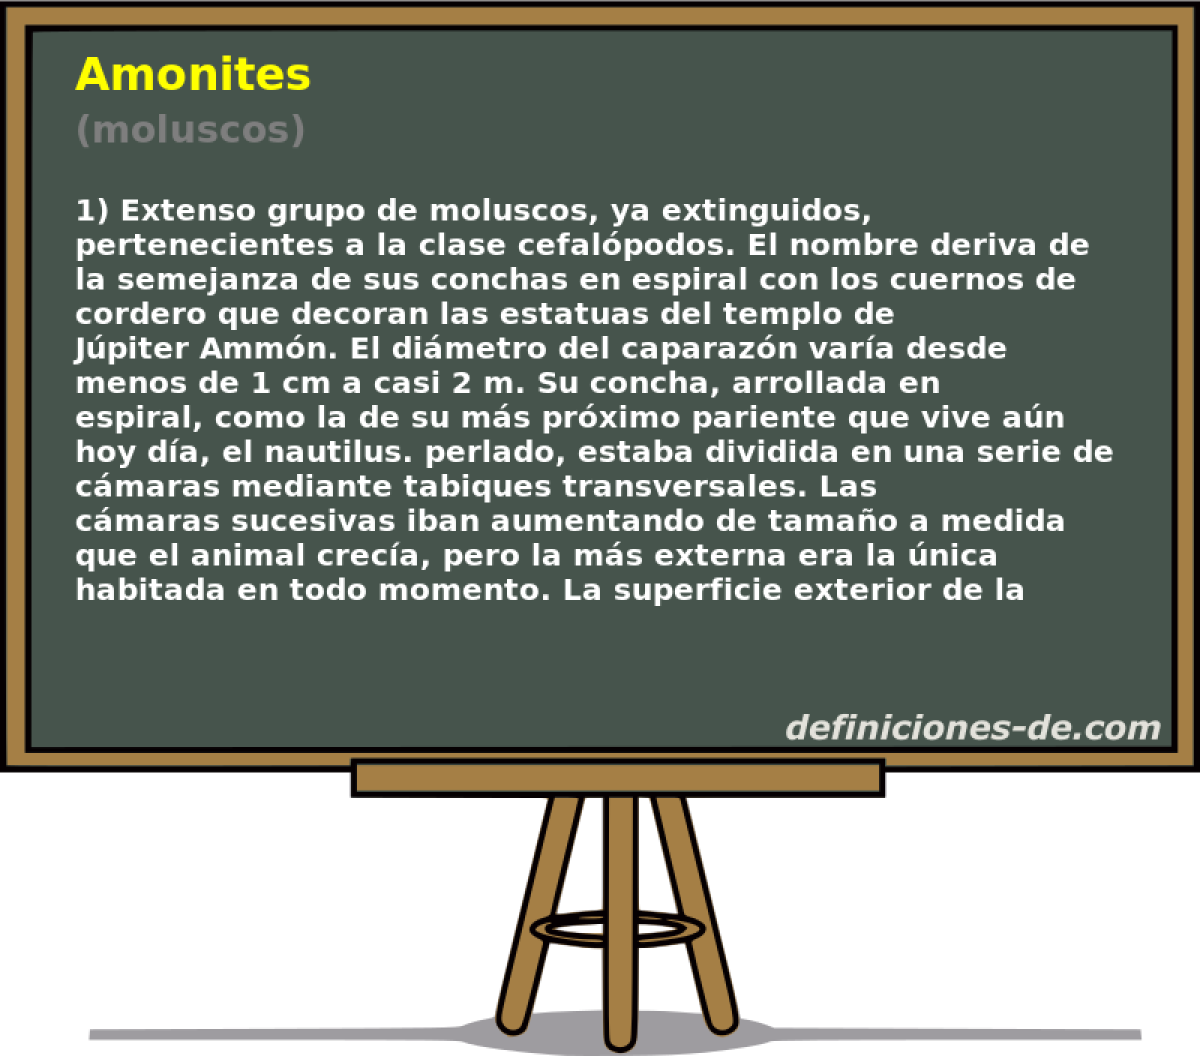 Amonites (moluscos)